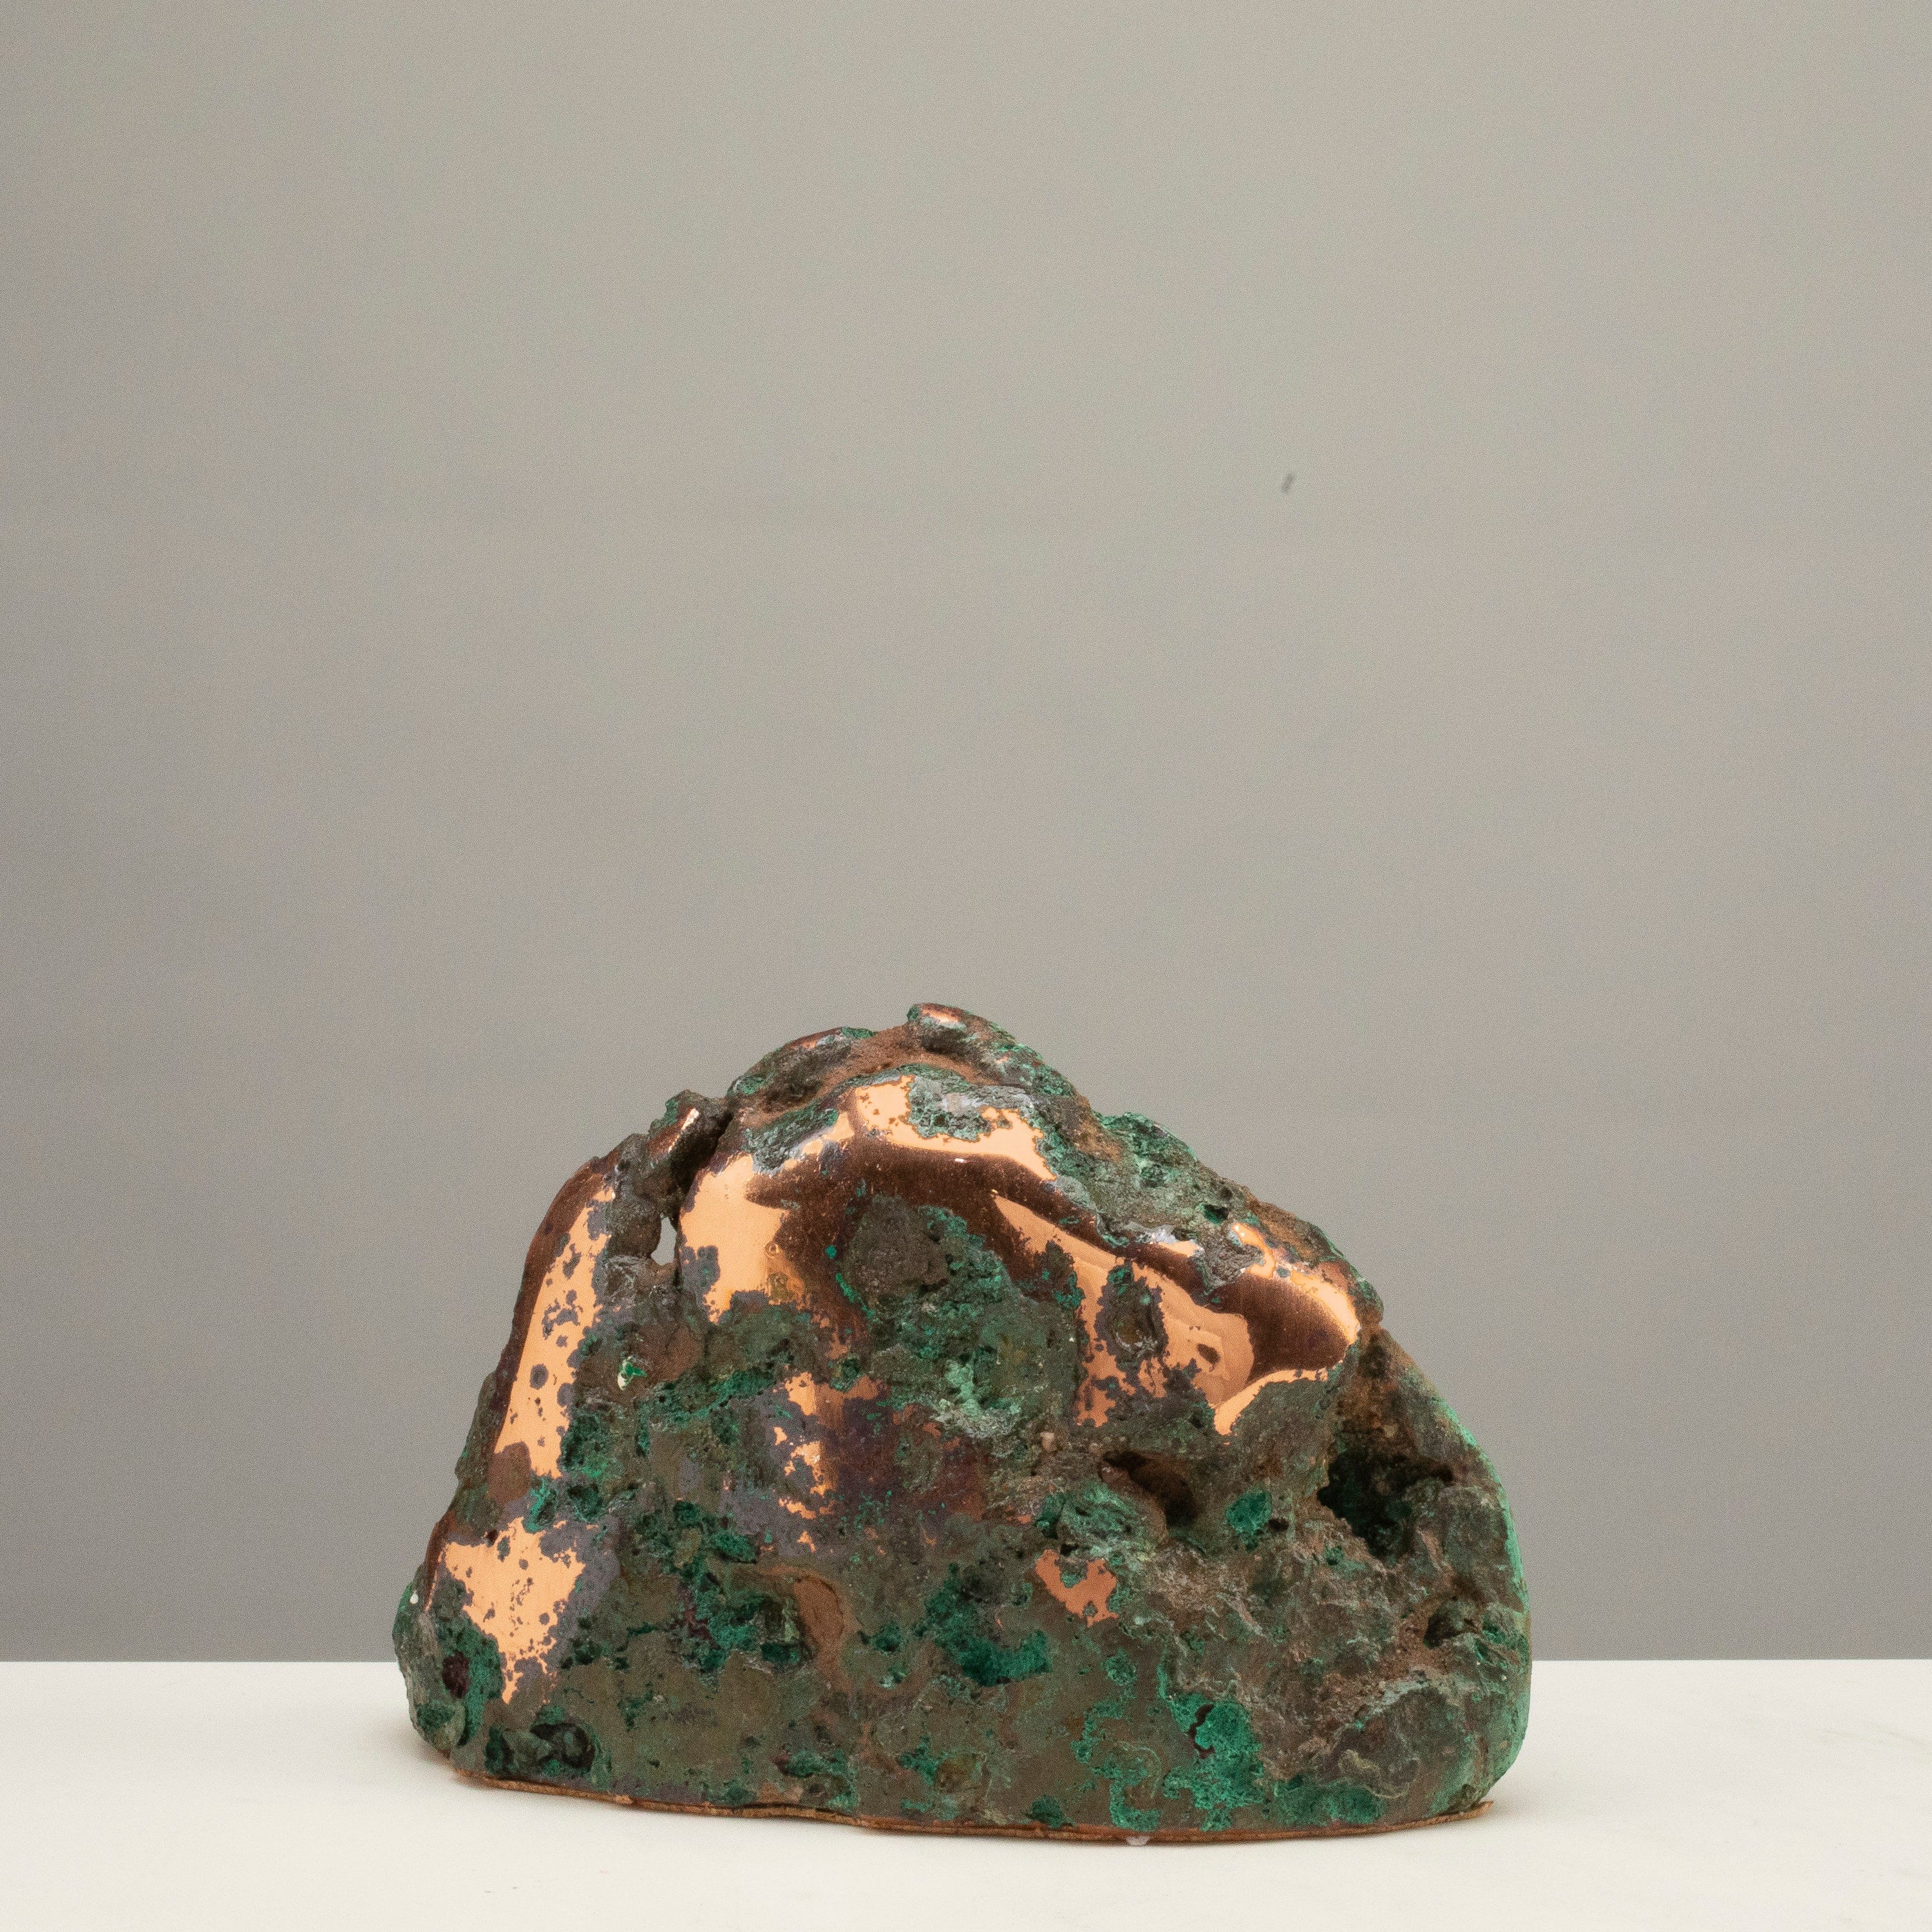 Kalifano Copper Copper Butchite from Michigan - 6" / 4.2lbs CPR1300.002